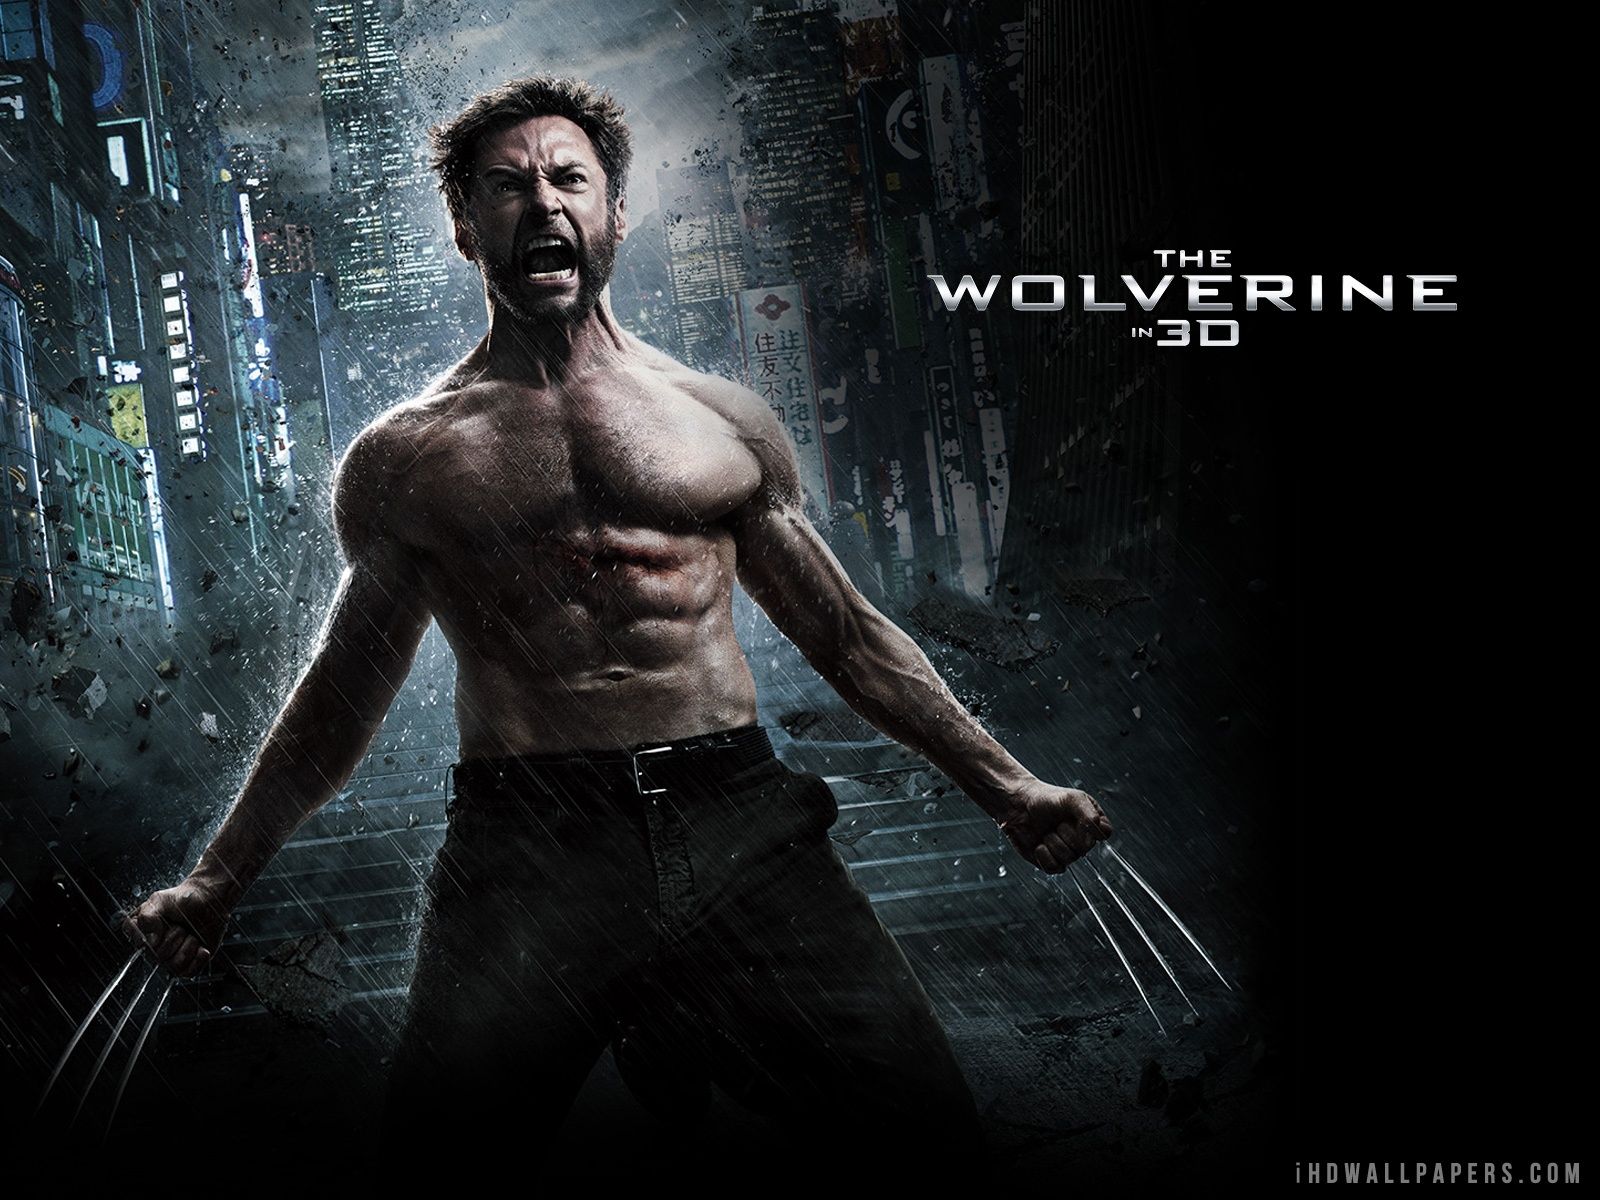 The Wolverine Movie Wallpaper Free The Wolverine Movie Background